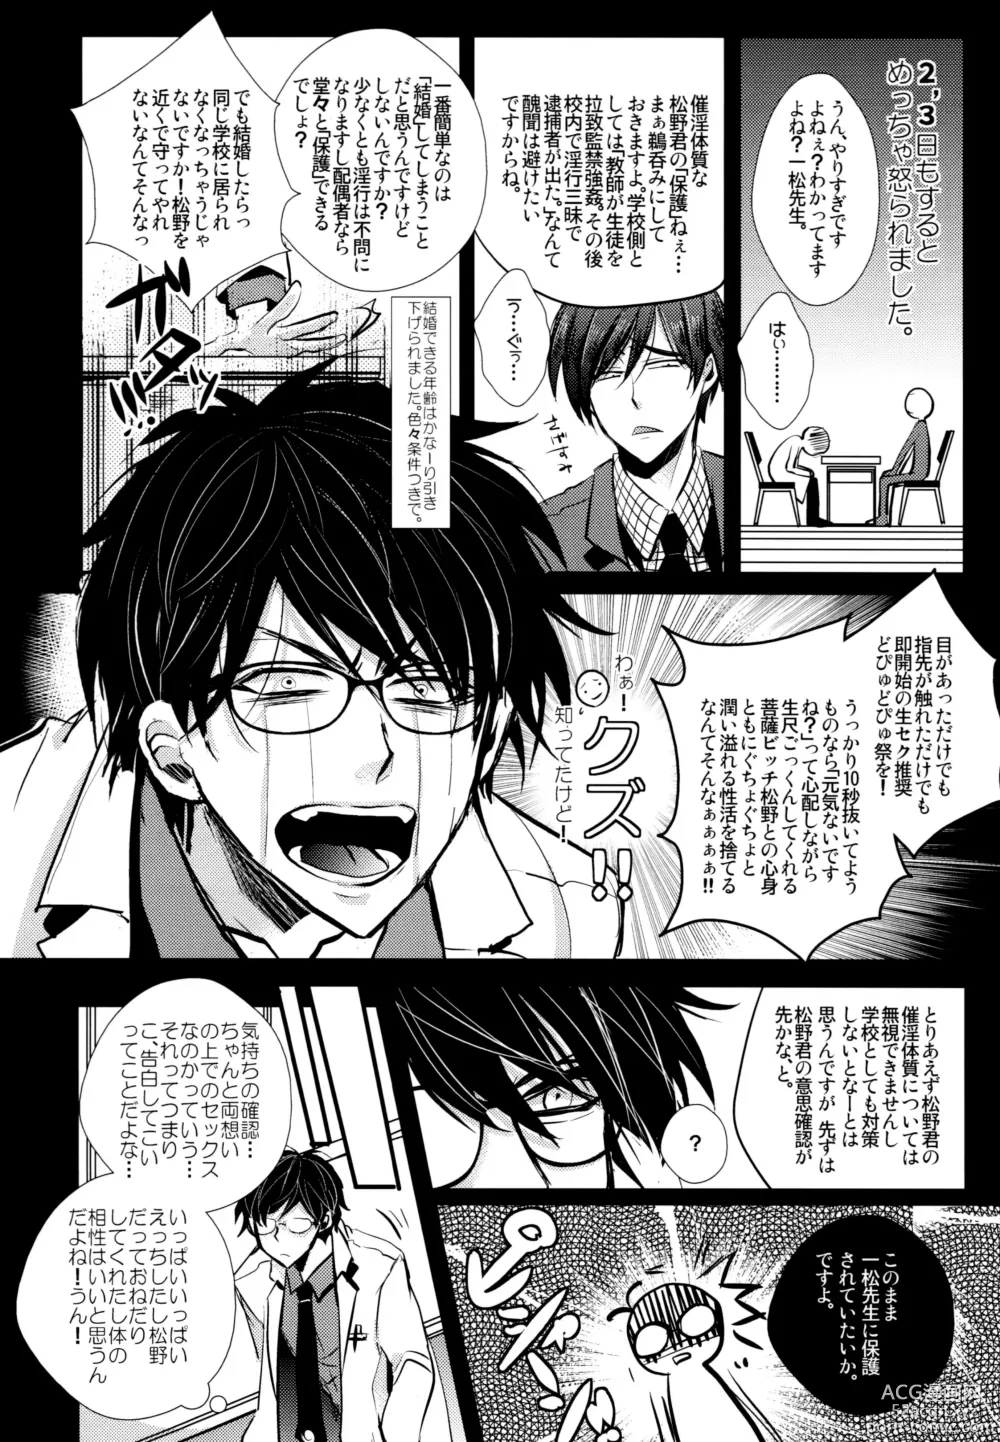 Page 21 of doujinshi Sensei datte Gaman Shinai.